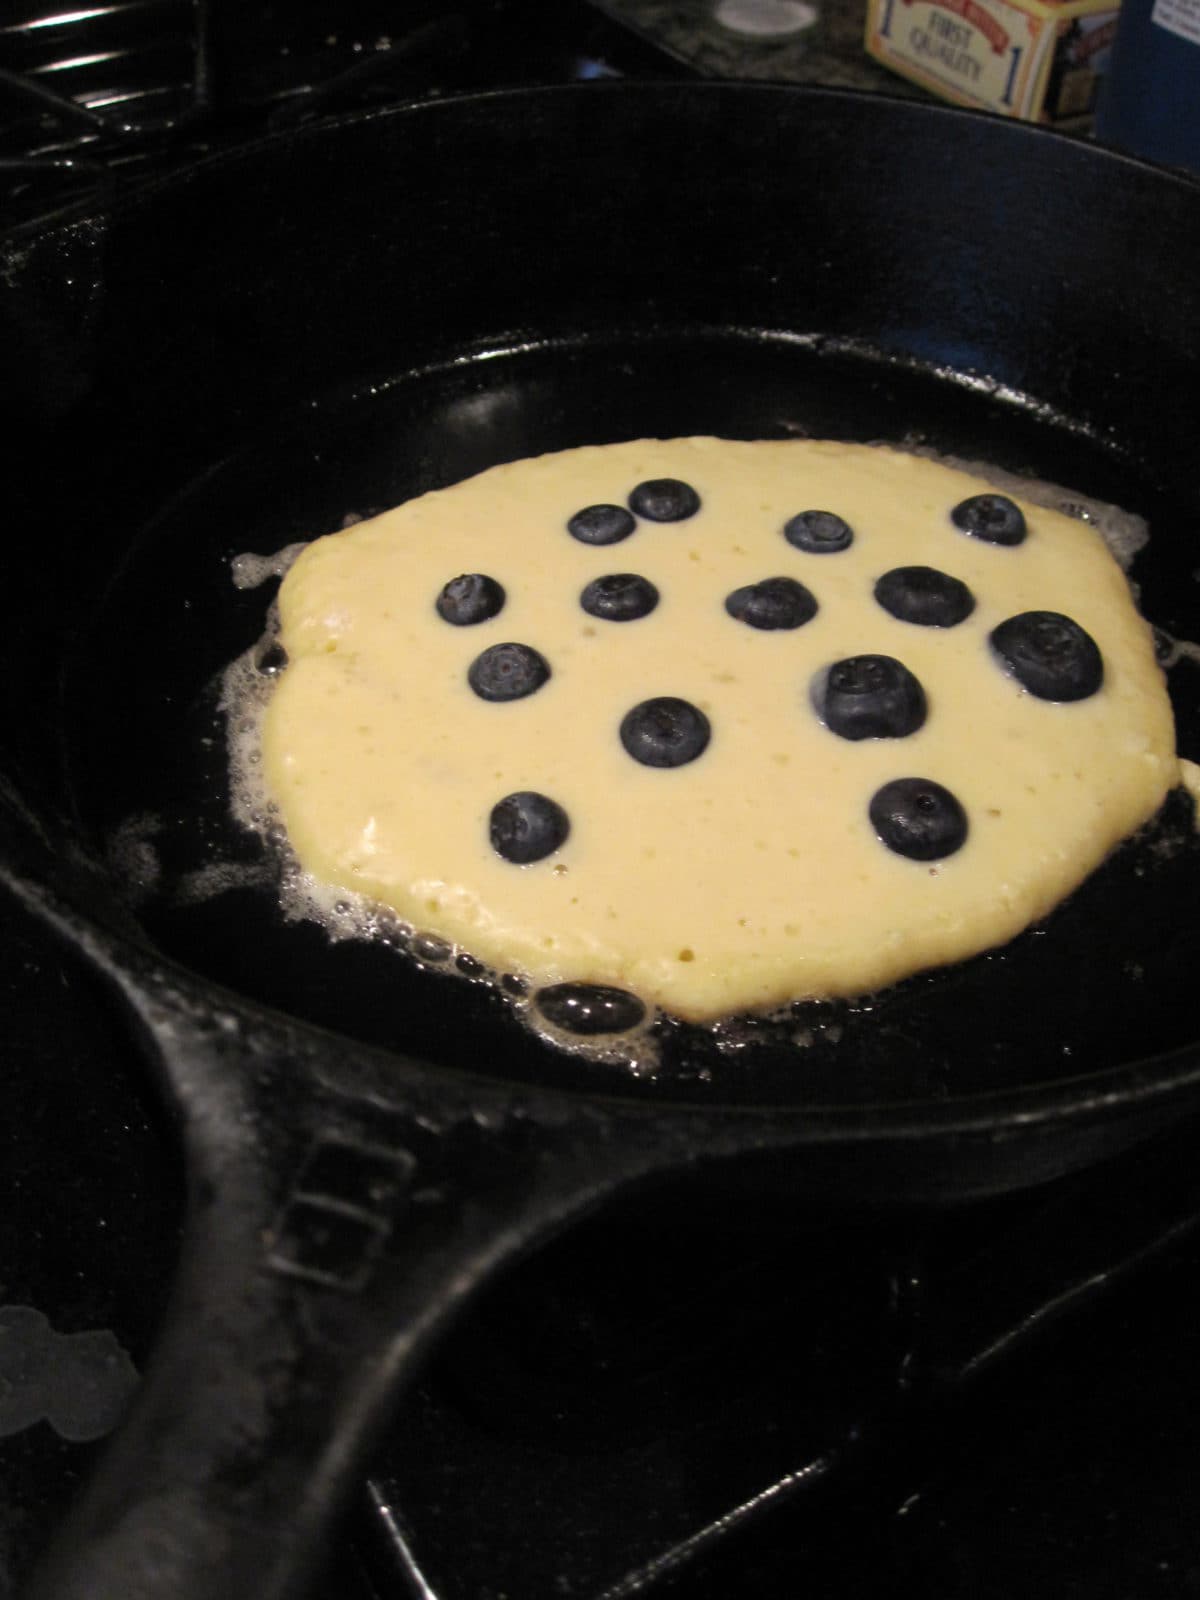 Blueberry pancake